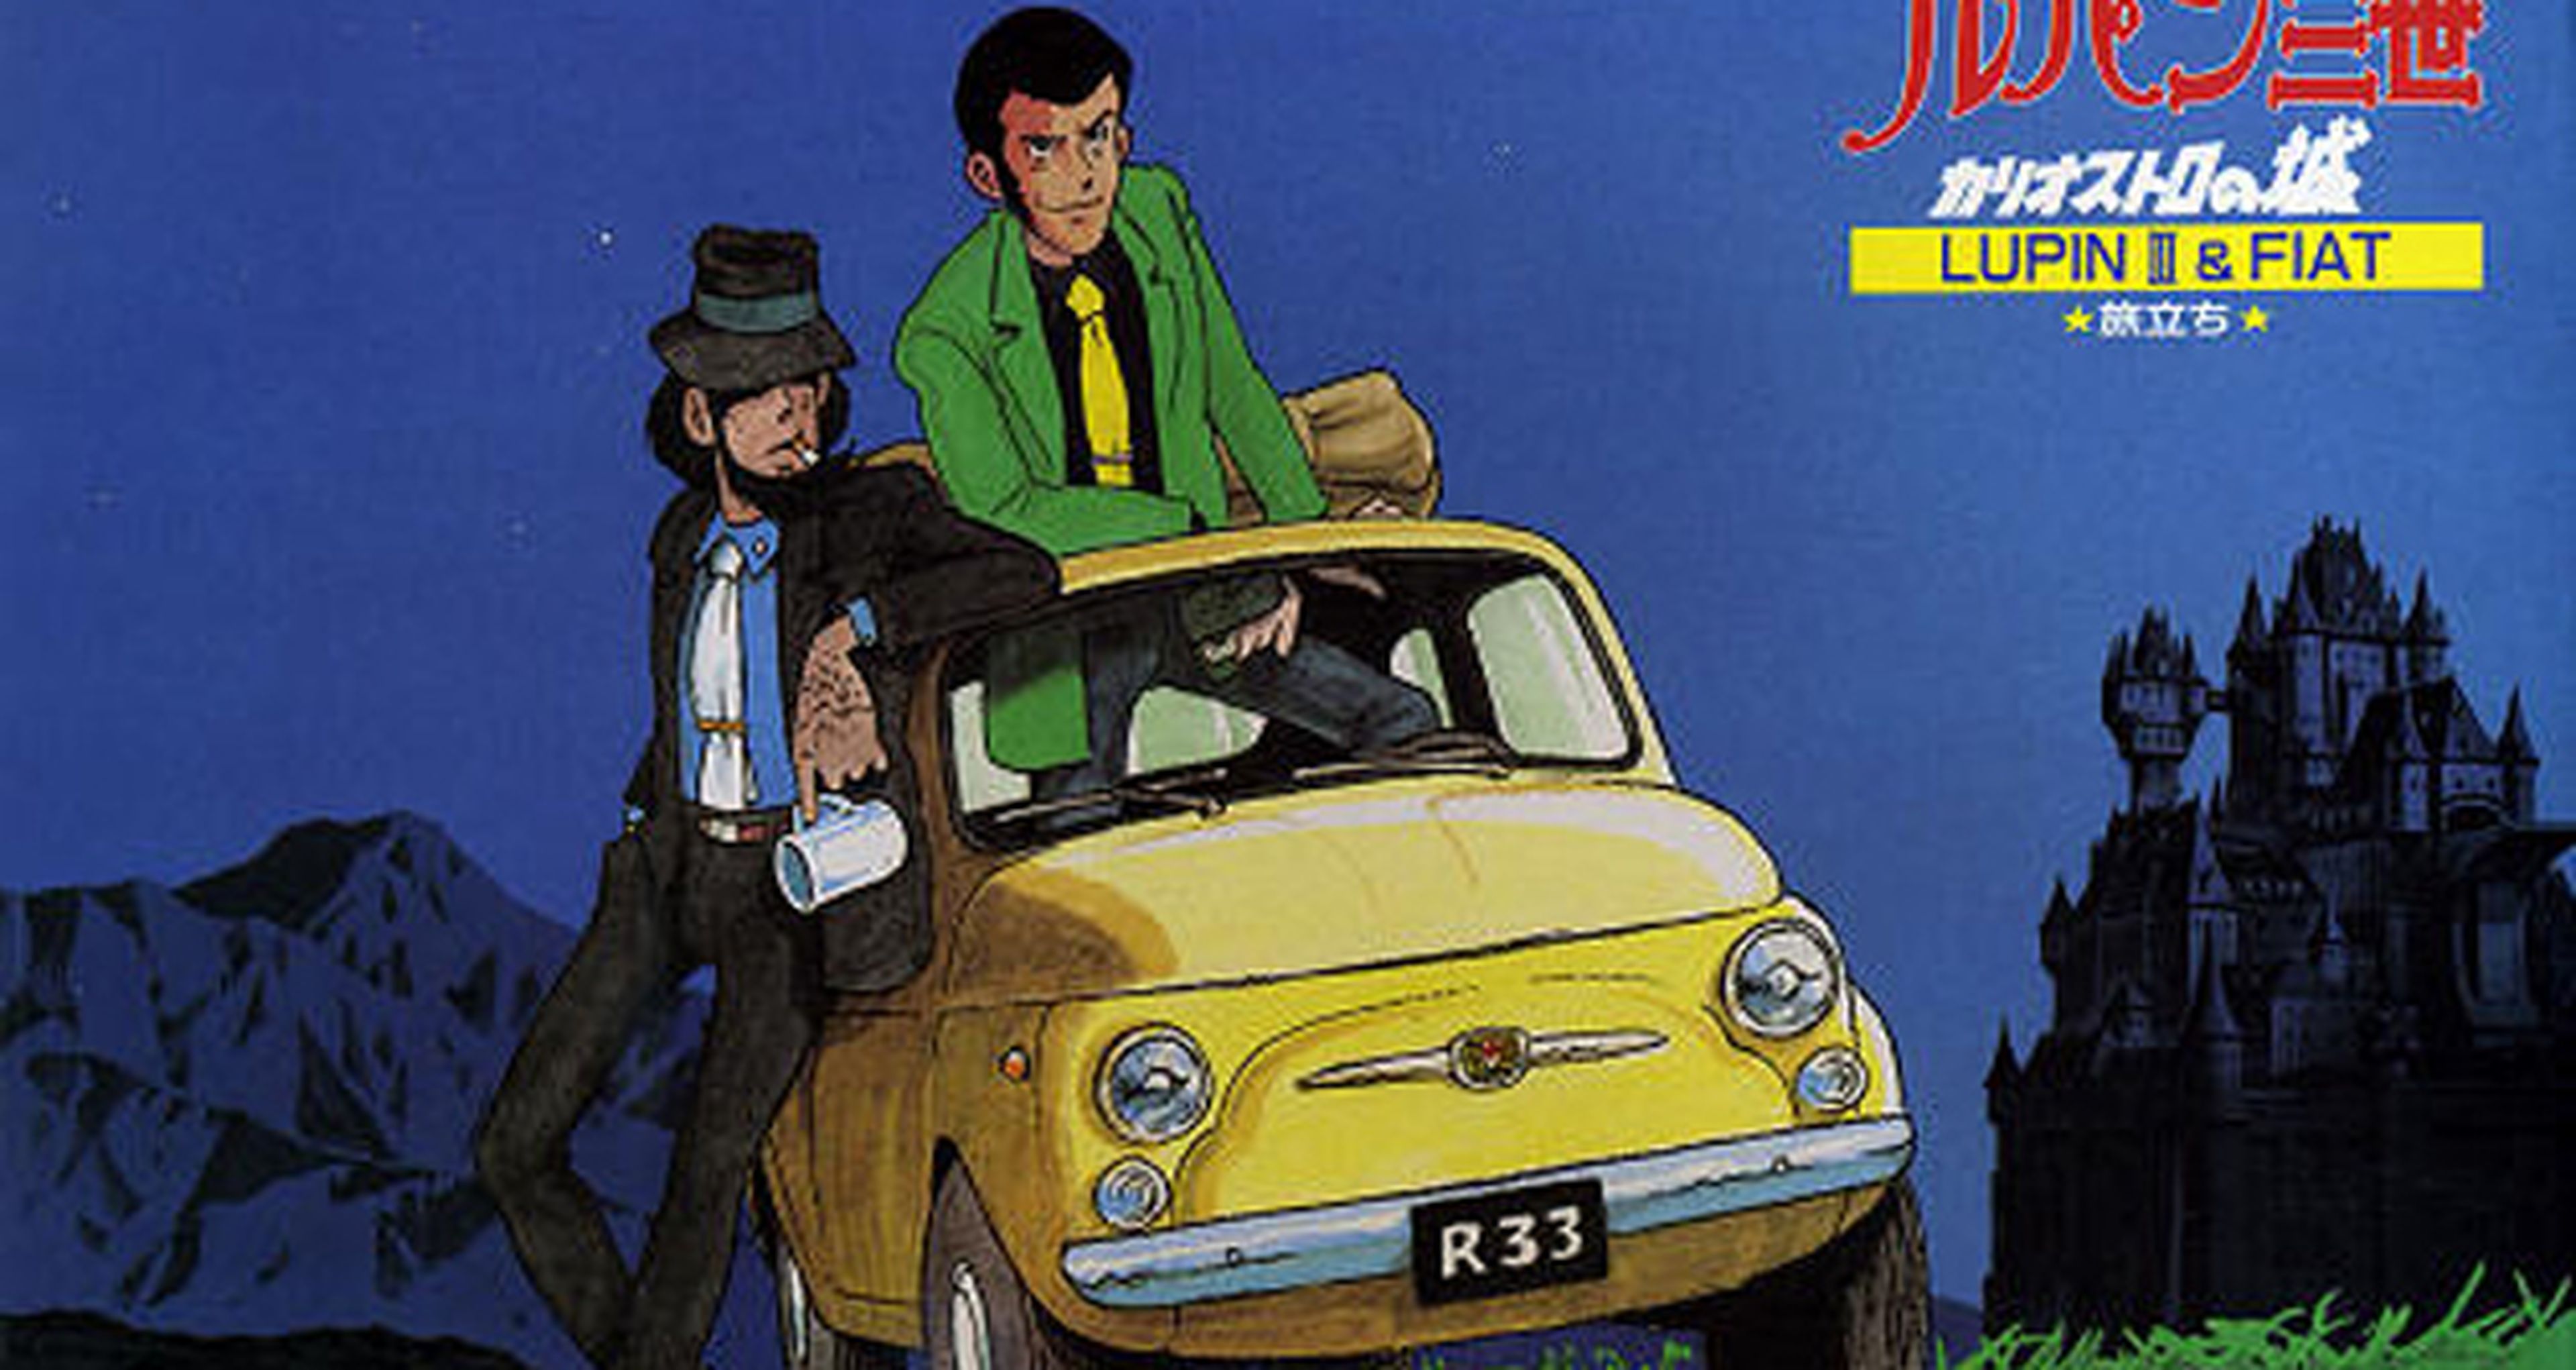 El coche de Lupin III saldrá en Cars 3